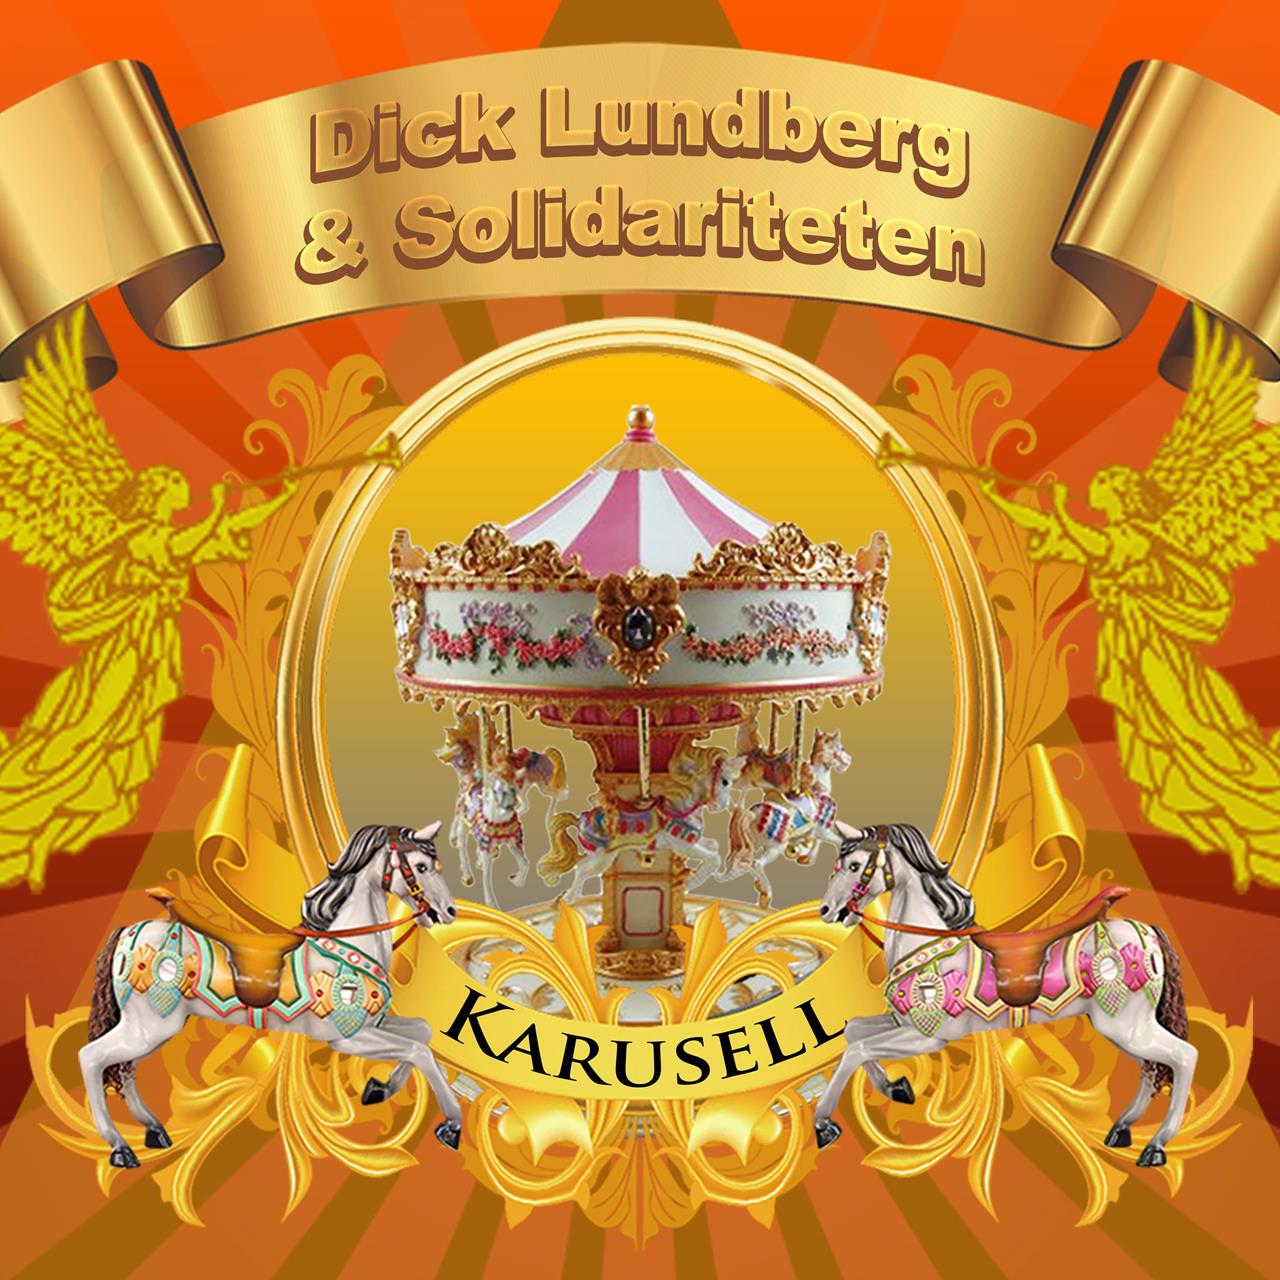 Karusell - cover art